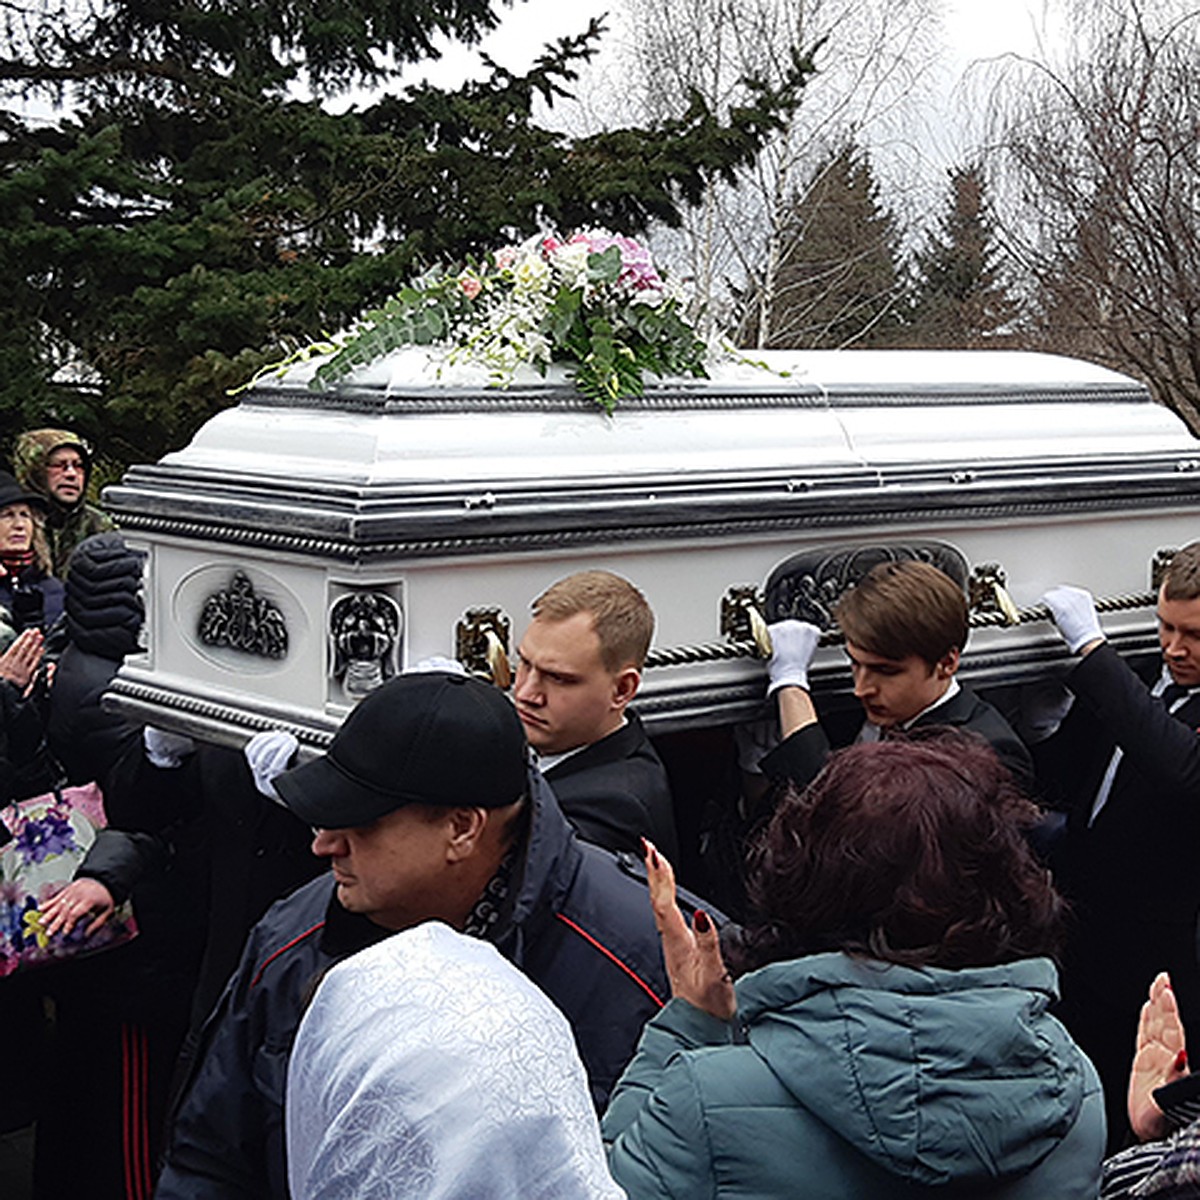 Похороны Юлии Началовой Фото В Открытом Гробу